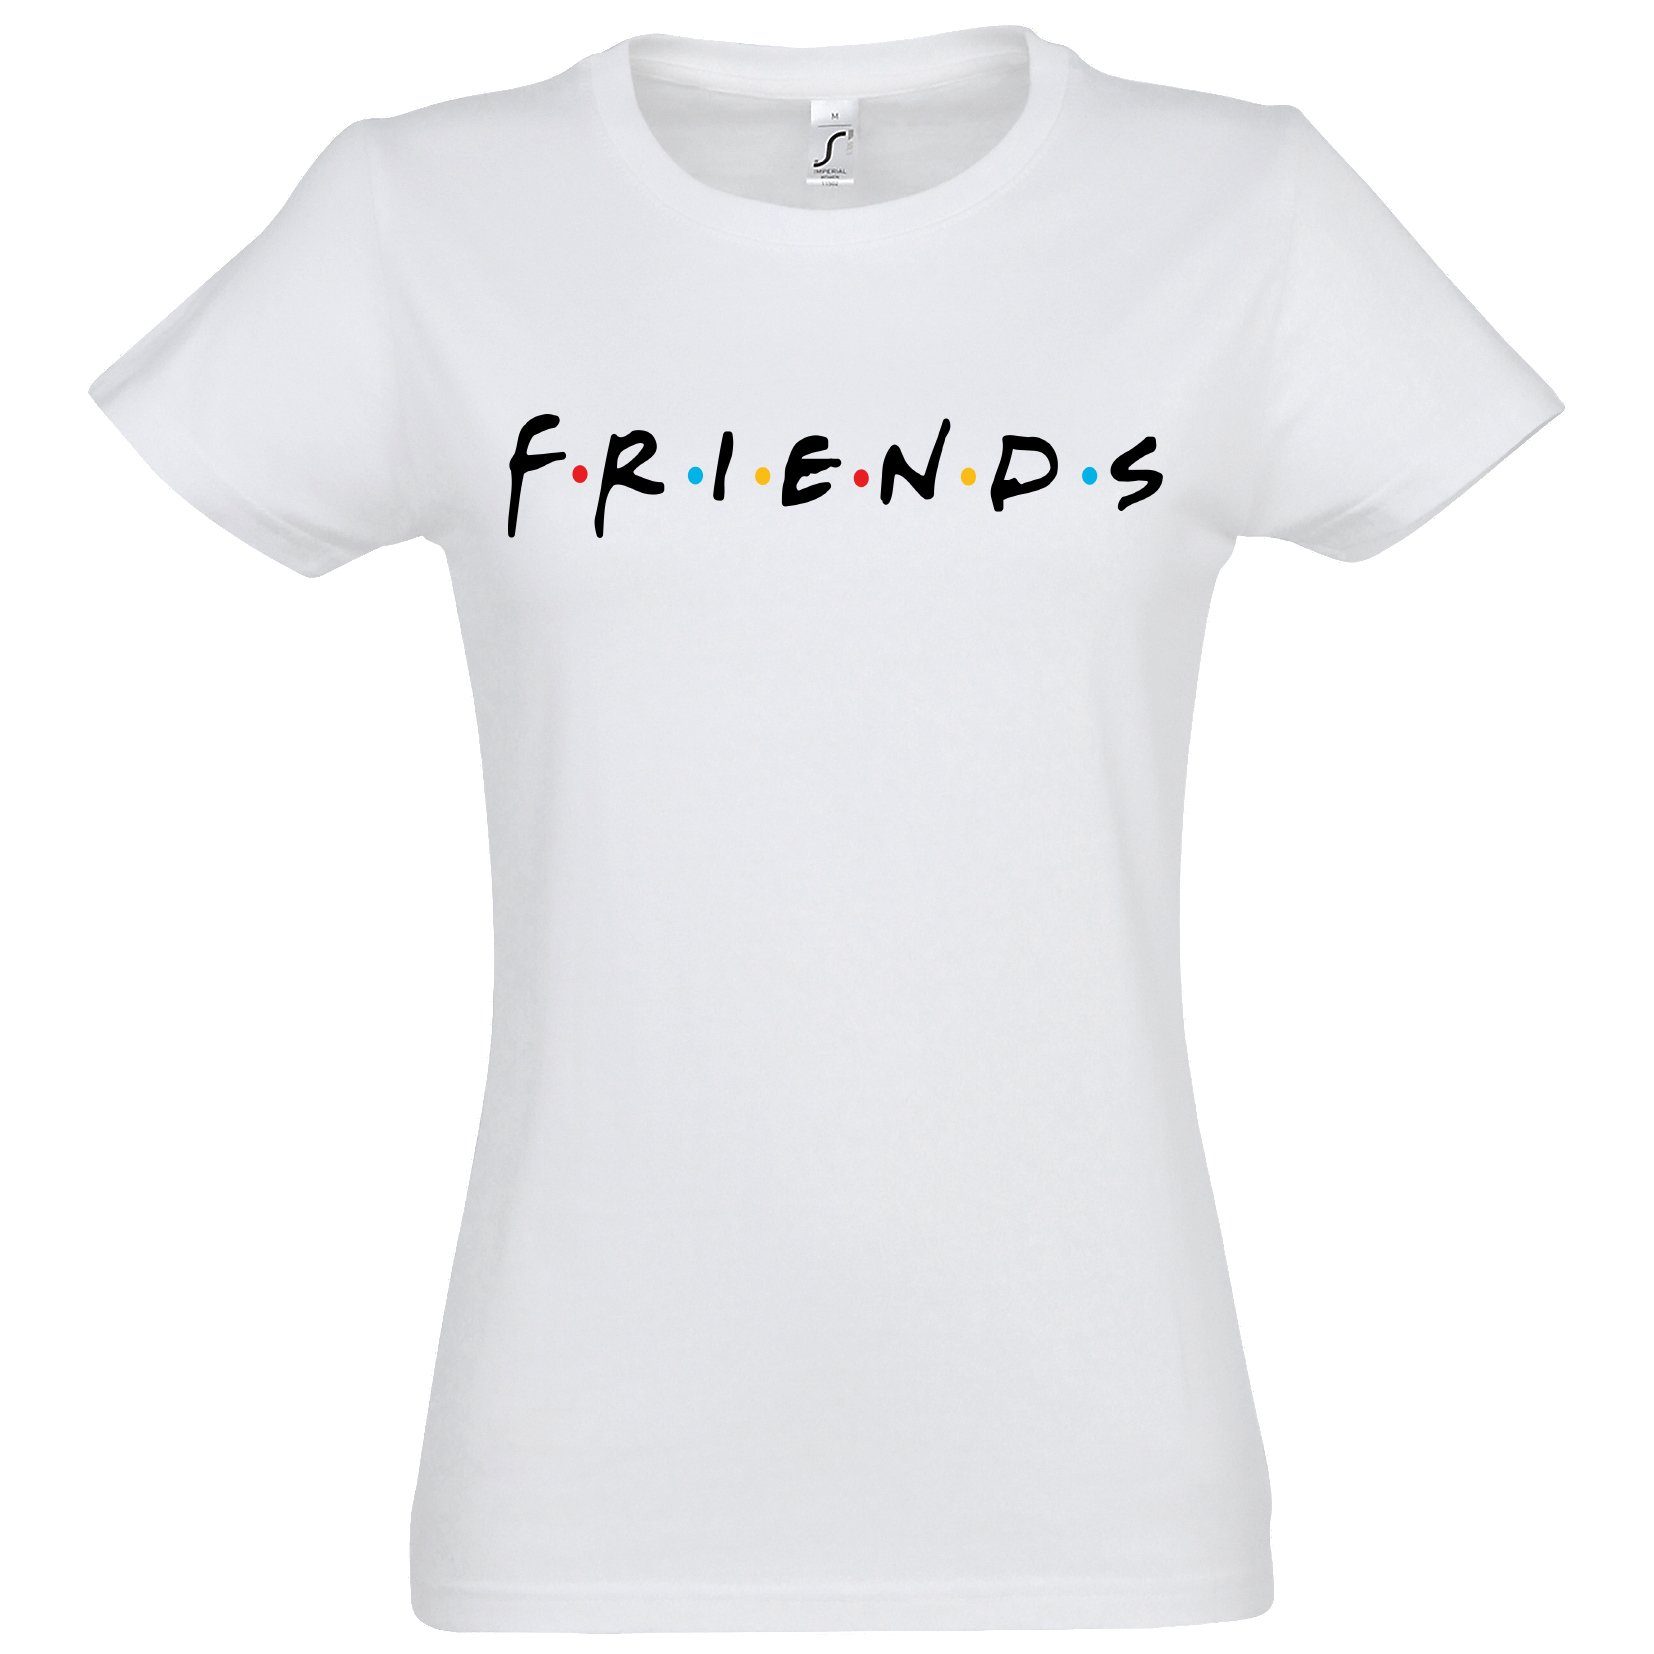 Designz Frontprint, Spruch Damen Shirt T-Shirt mit Youth Weiß trendiger Logo Friends